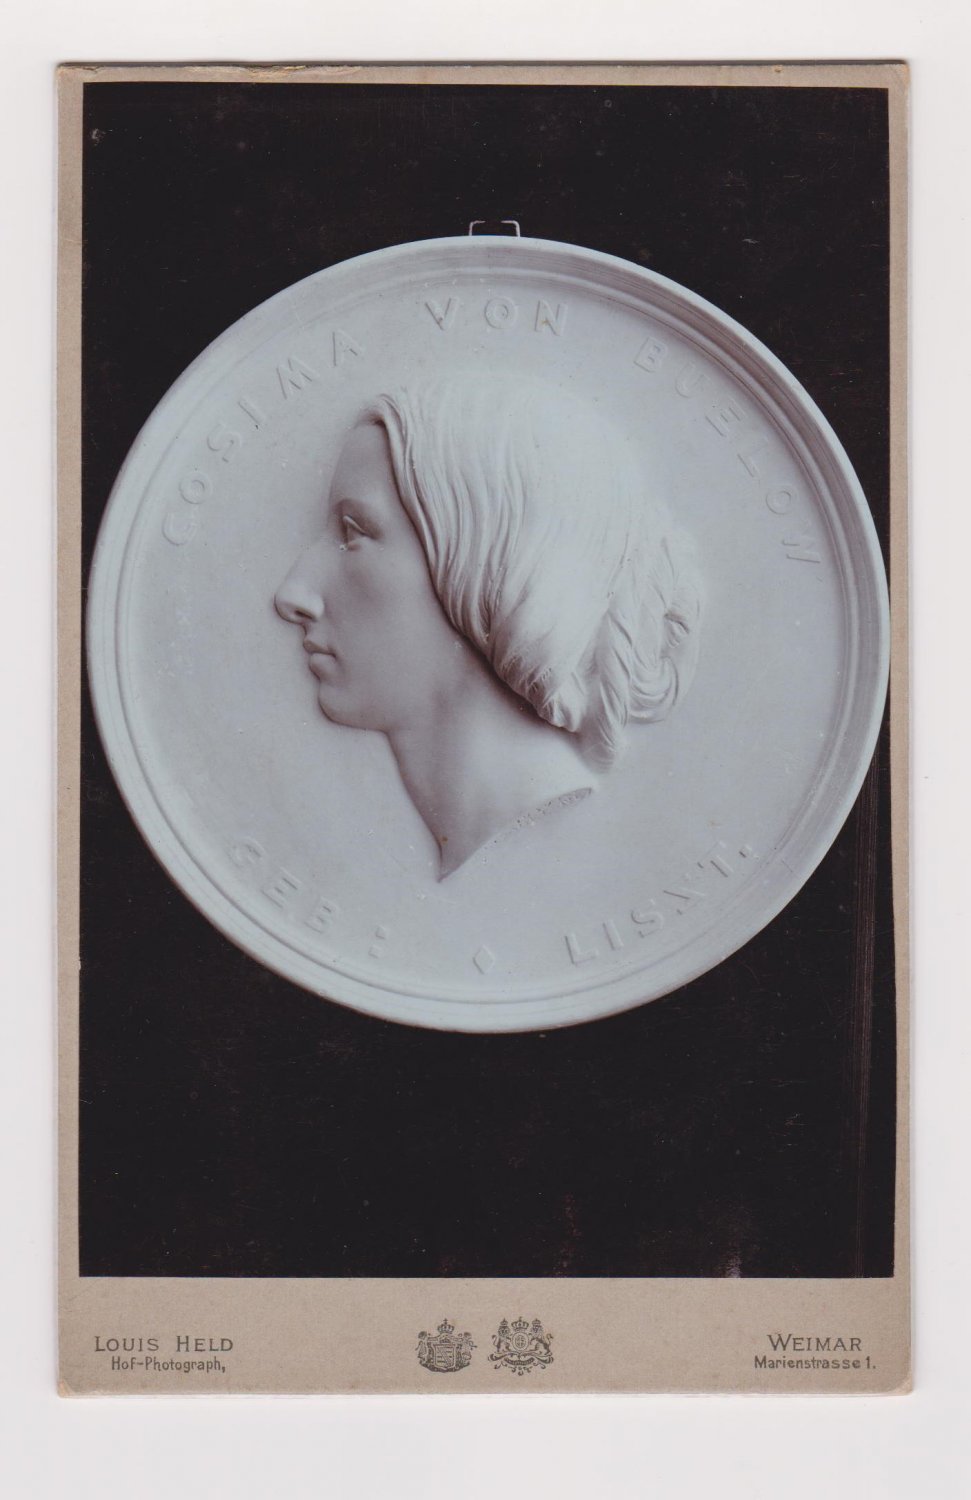 HELD, Louis.-  Original Photographie einer Medaille? / Wandteller? Cosima von Bülow im Profil zeigend. 